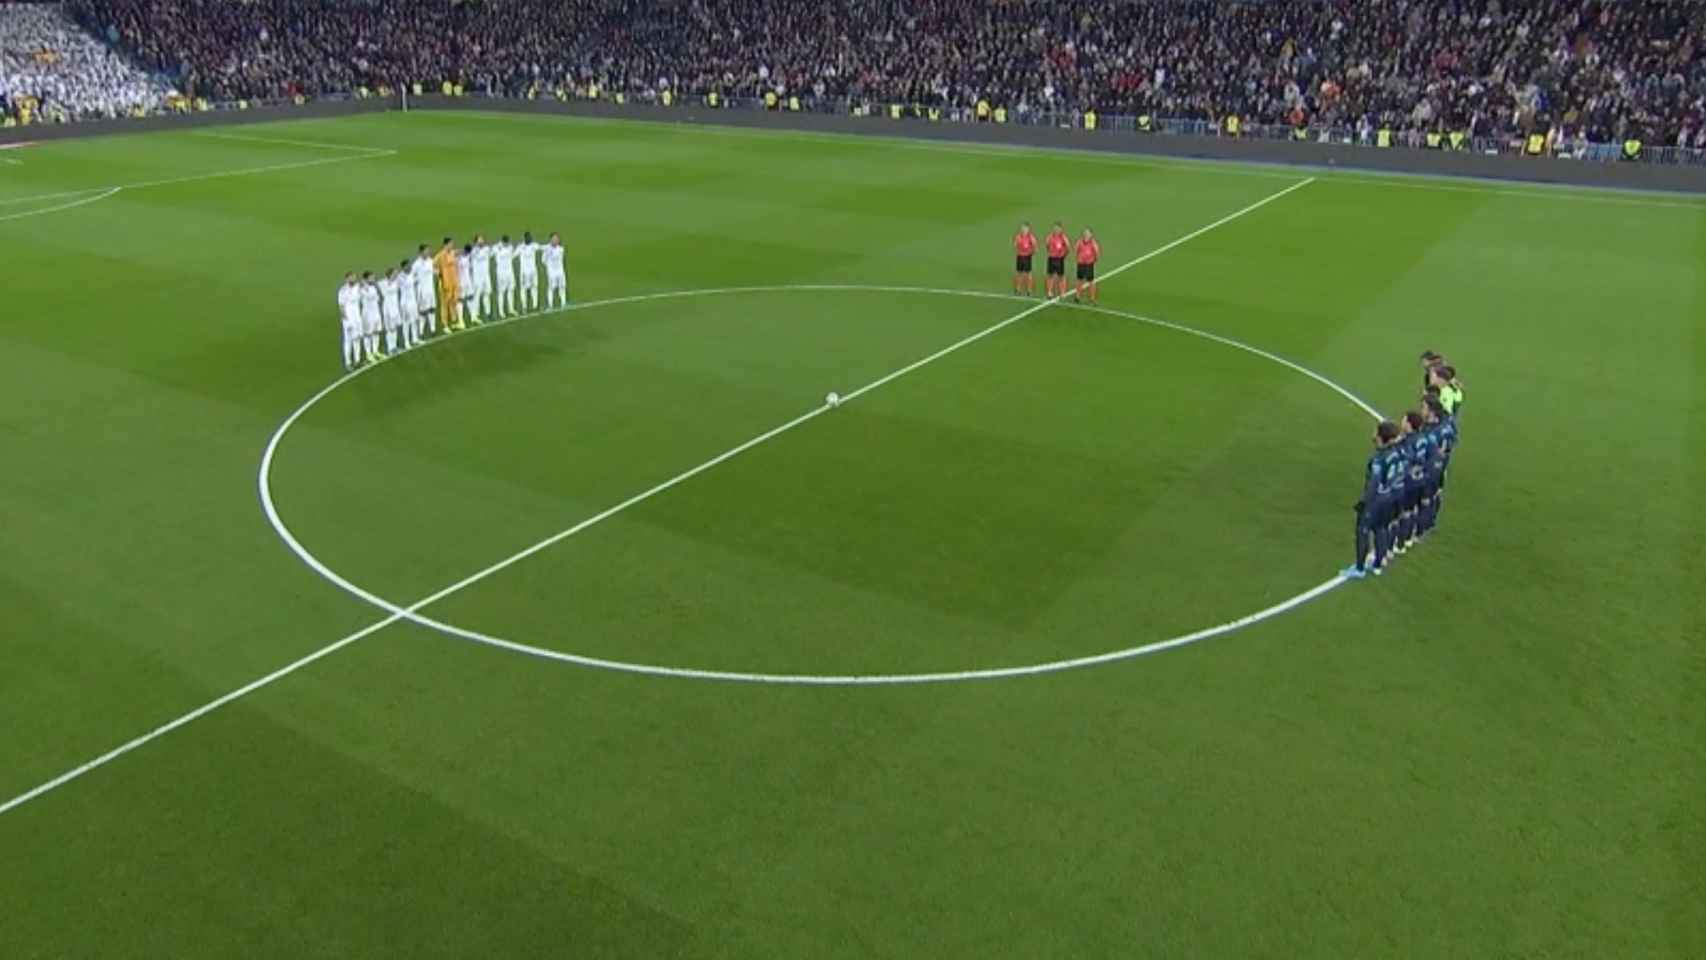 Minuto de silencio en el Real Madrid - Real Sociedad